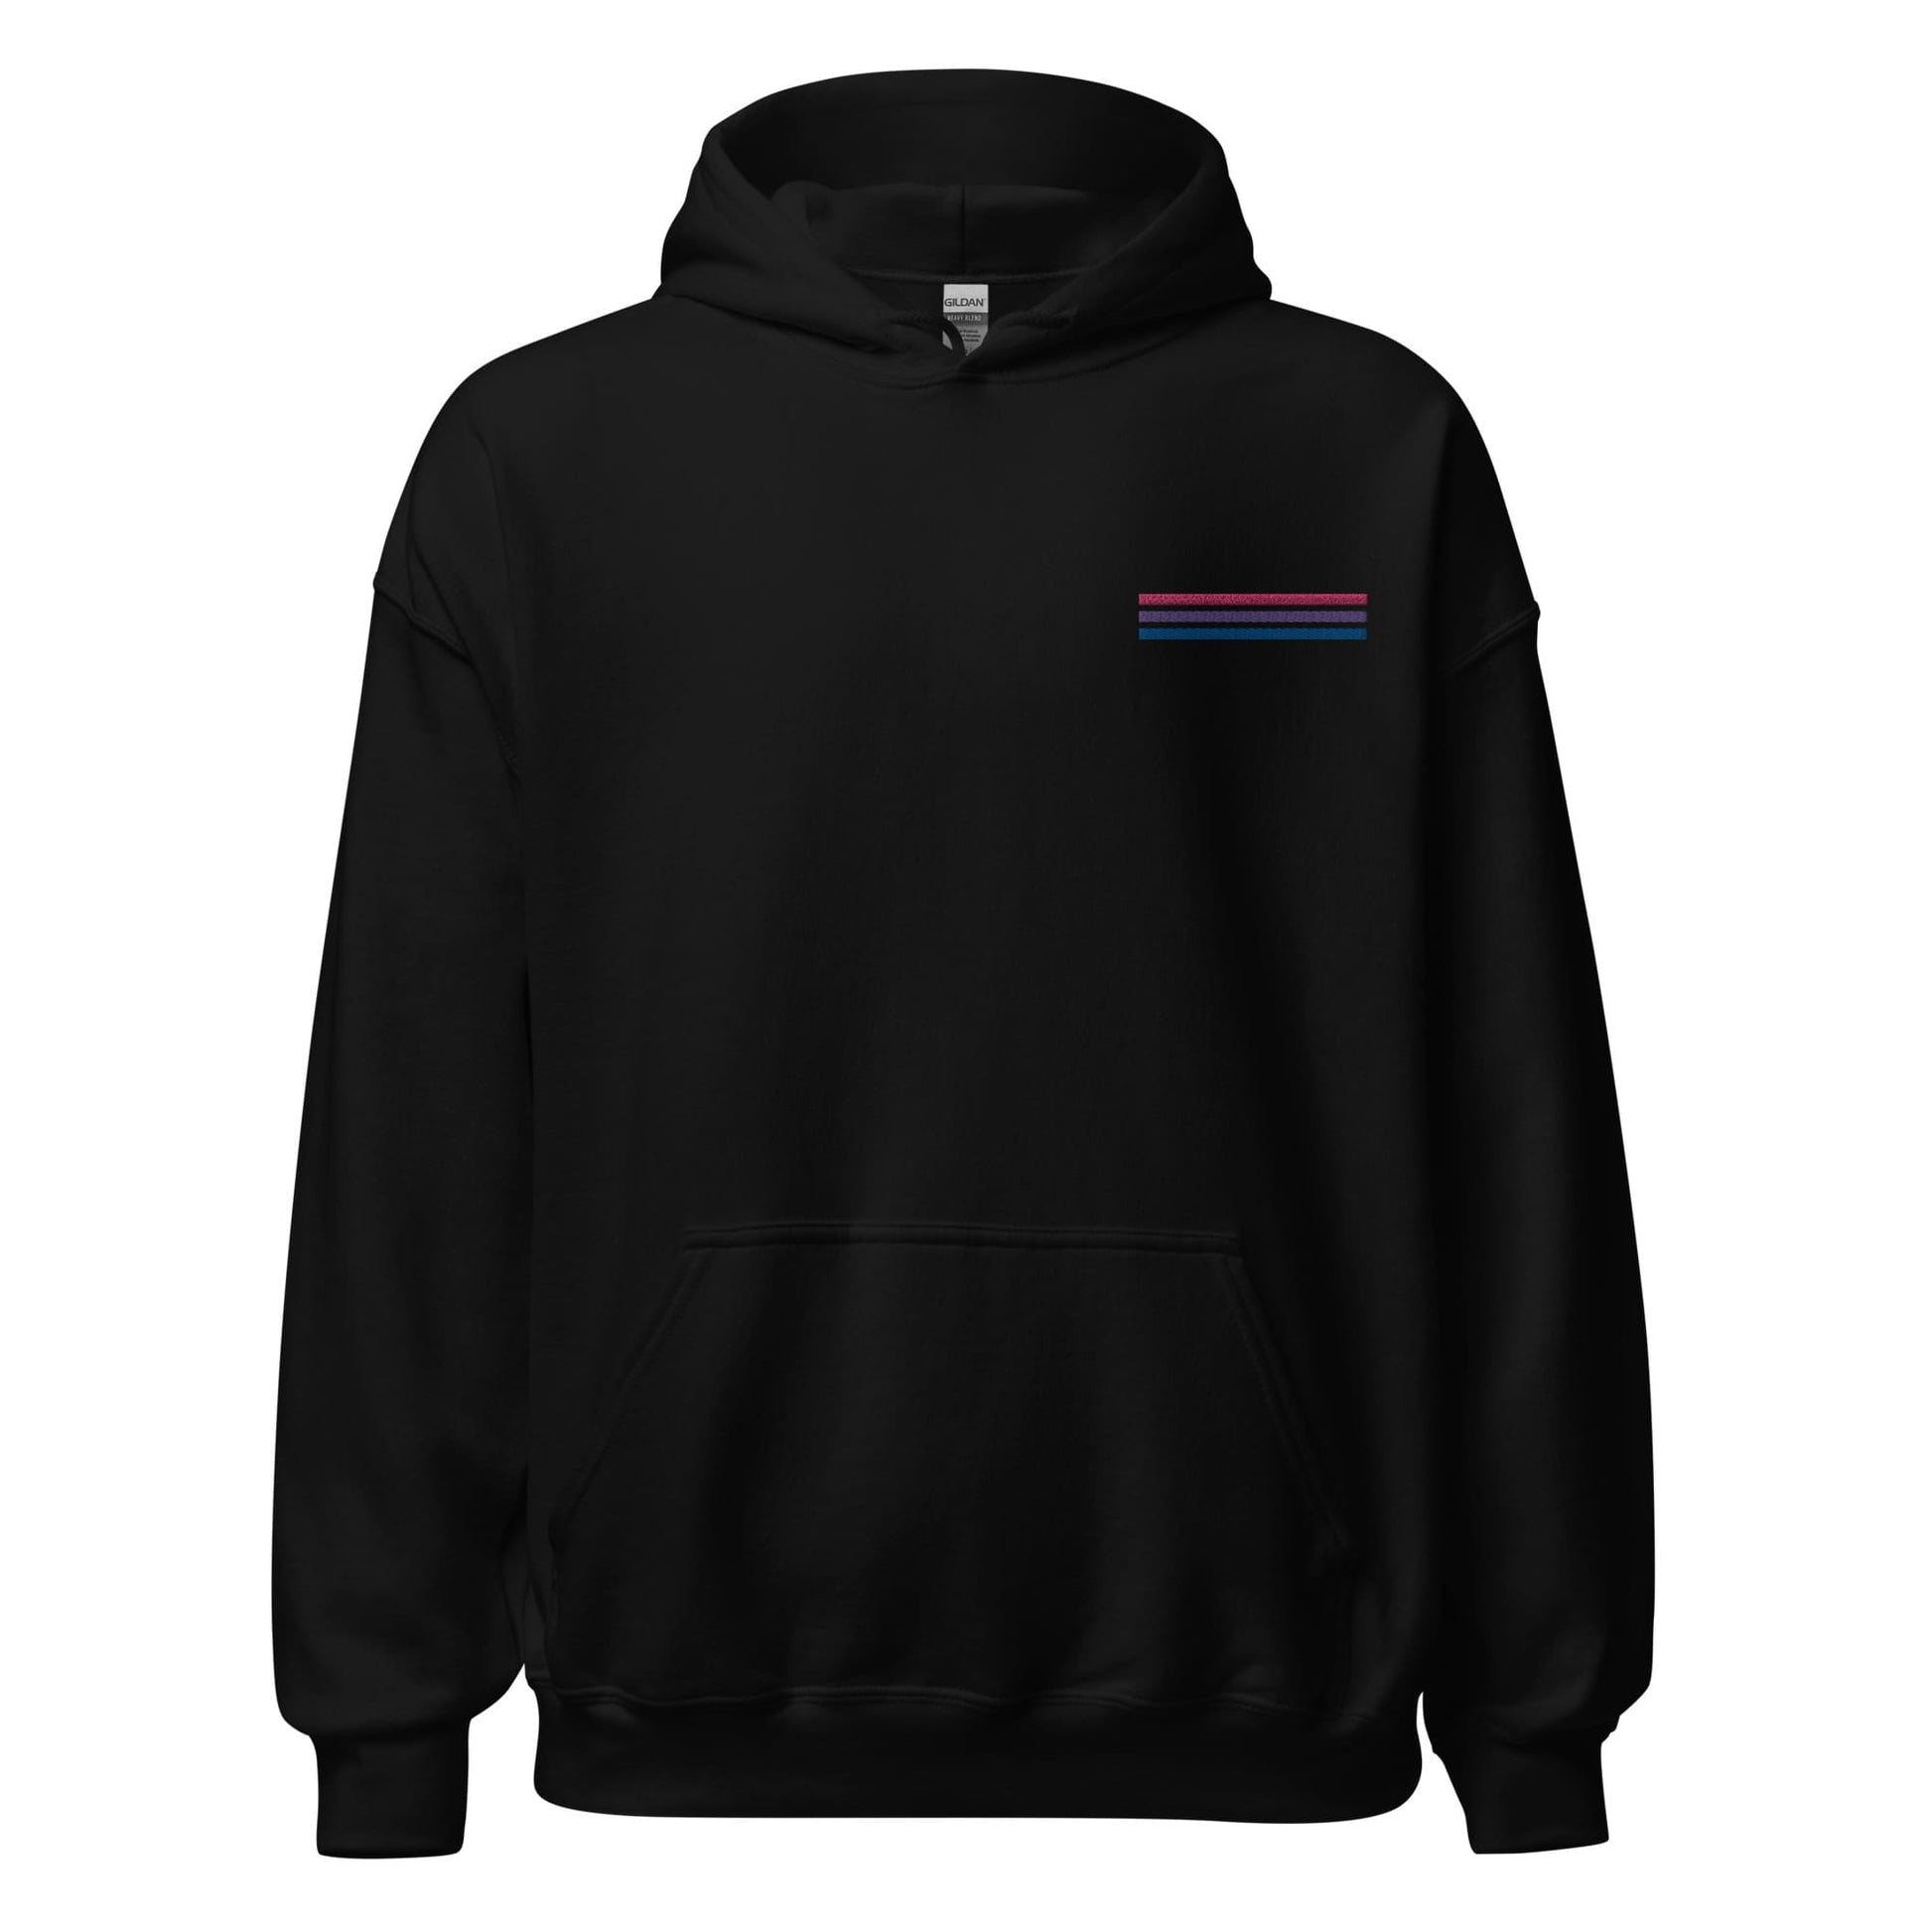 bisexual hoodie, subtle bi pride flag embroidered pocket design hooded sweatshirt, hang